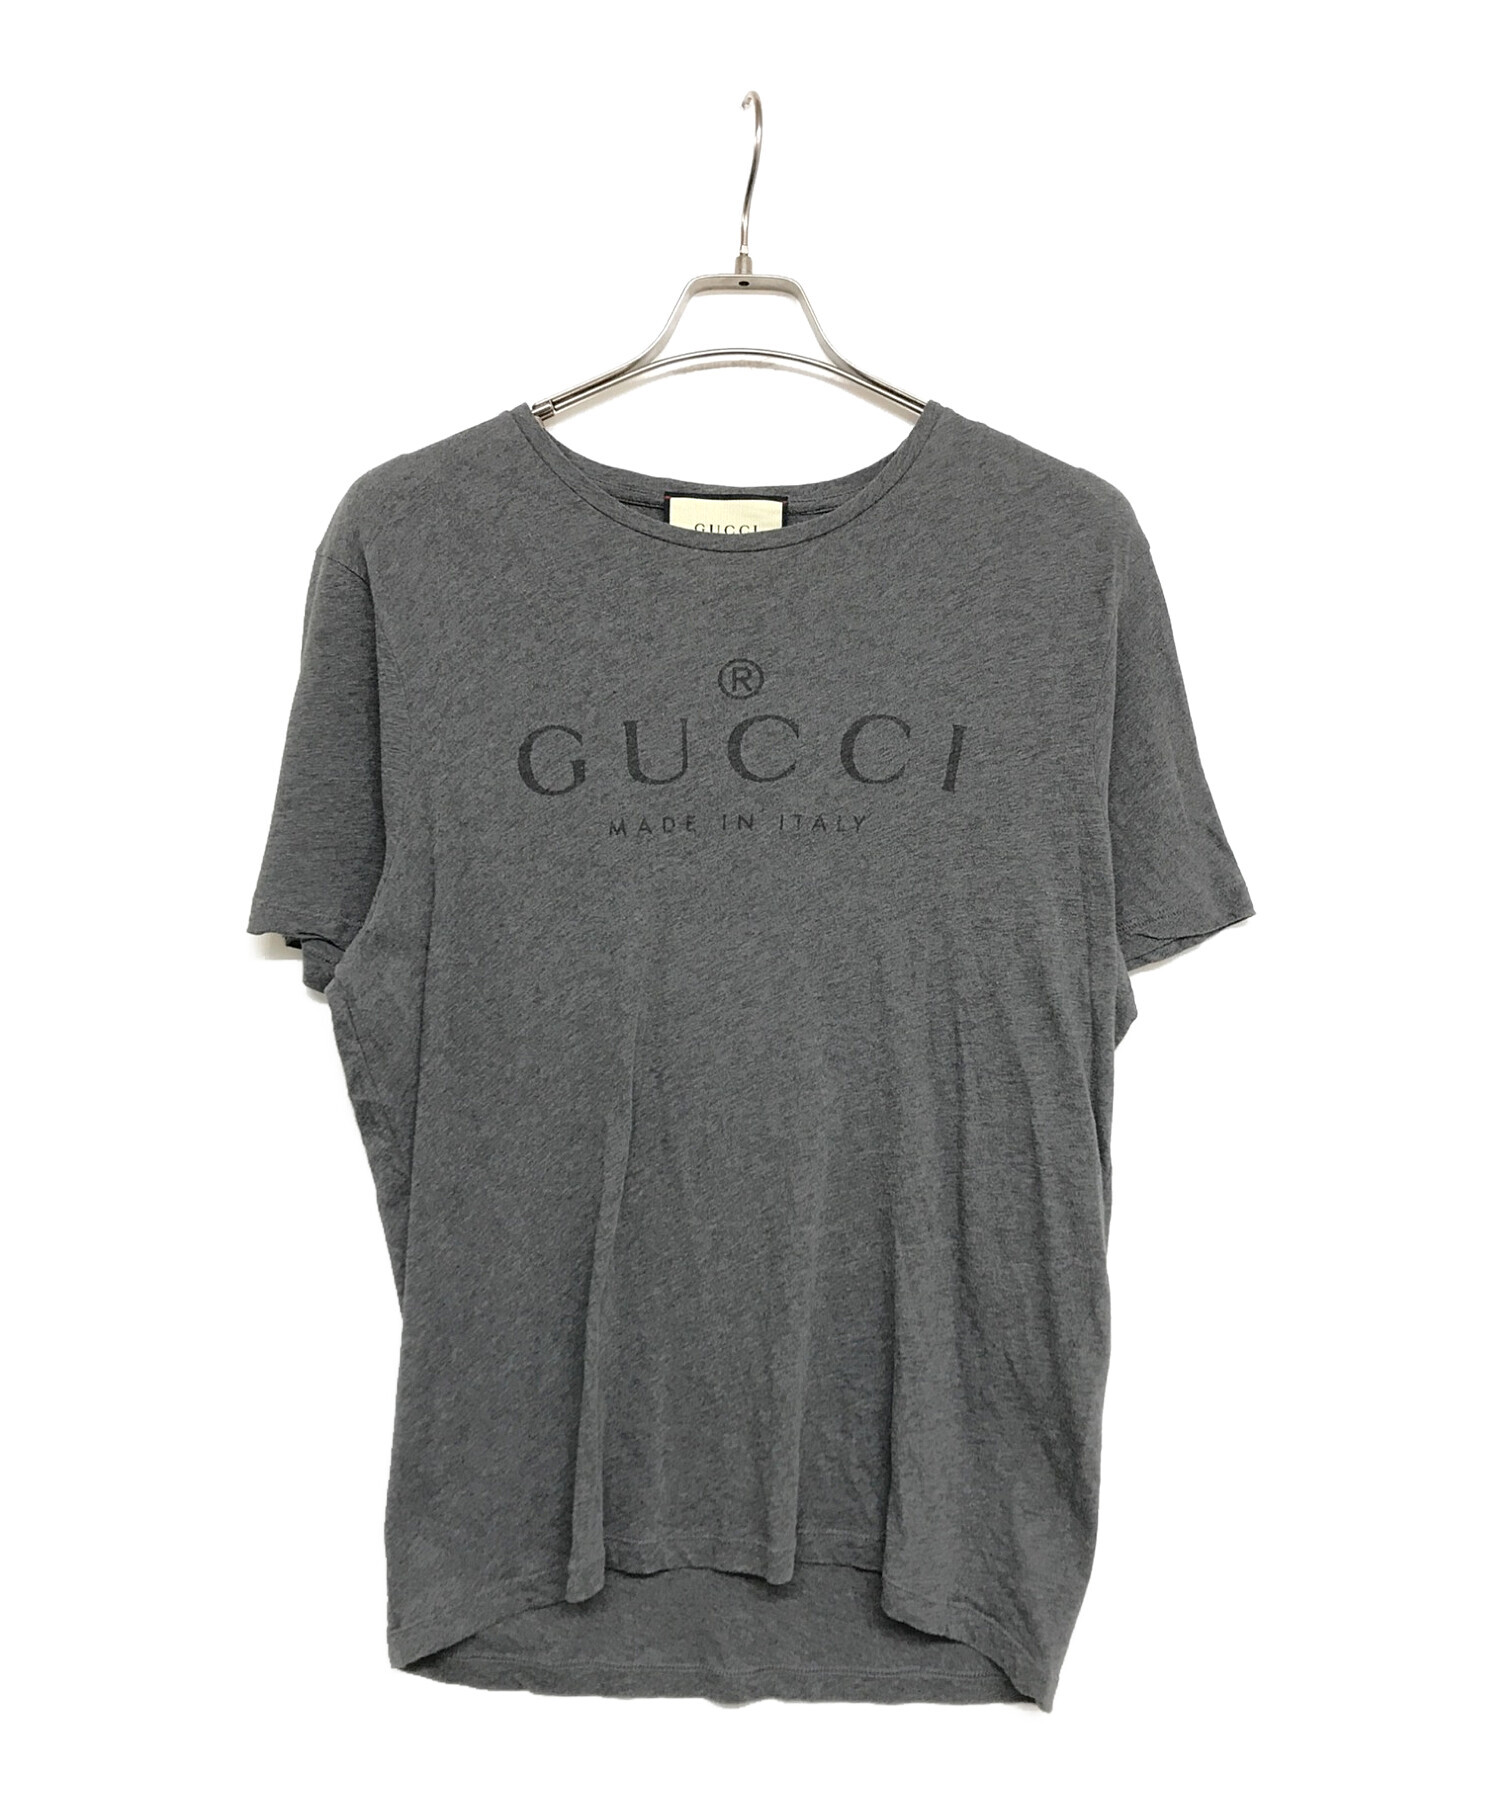 GUCCI (グッチ) ロゴTシャツ 441685 グレー サイズ:L